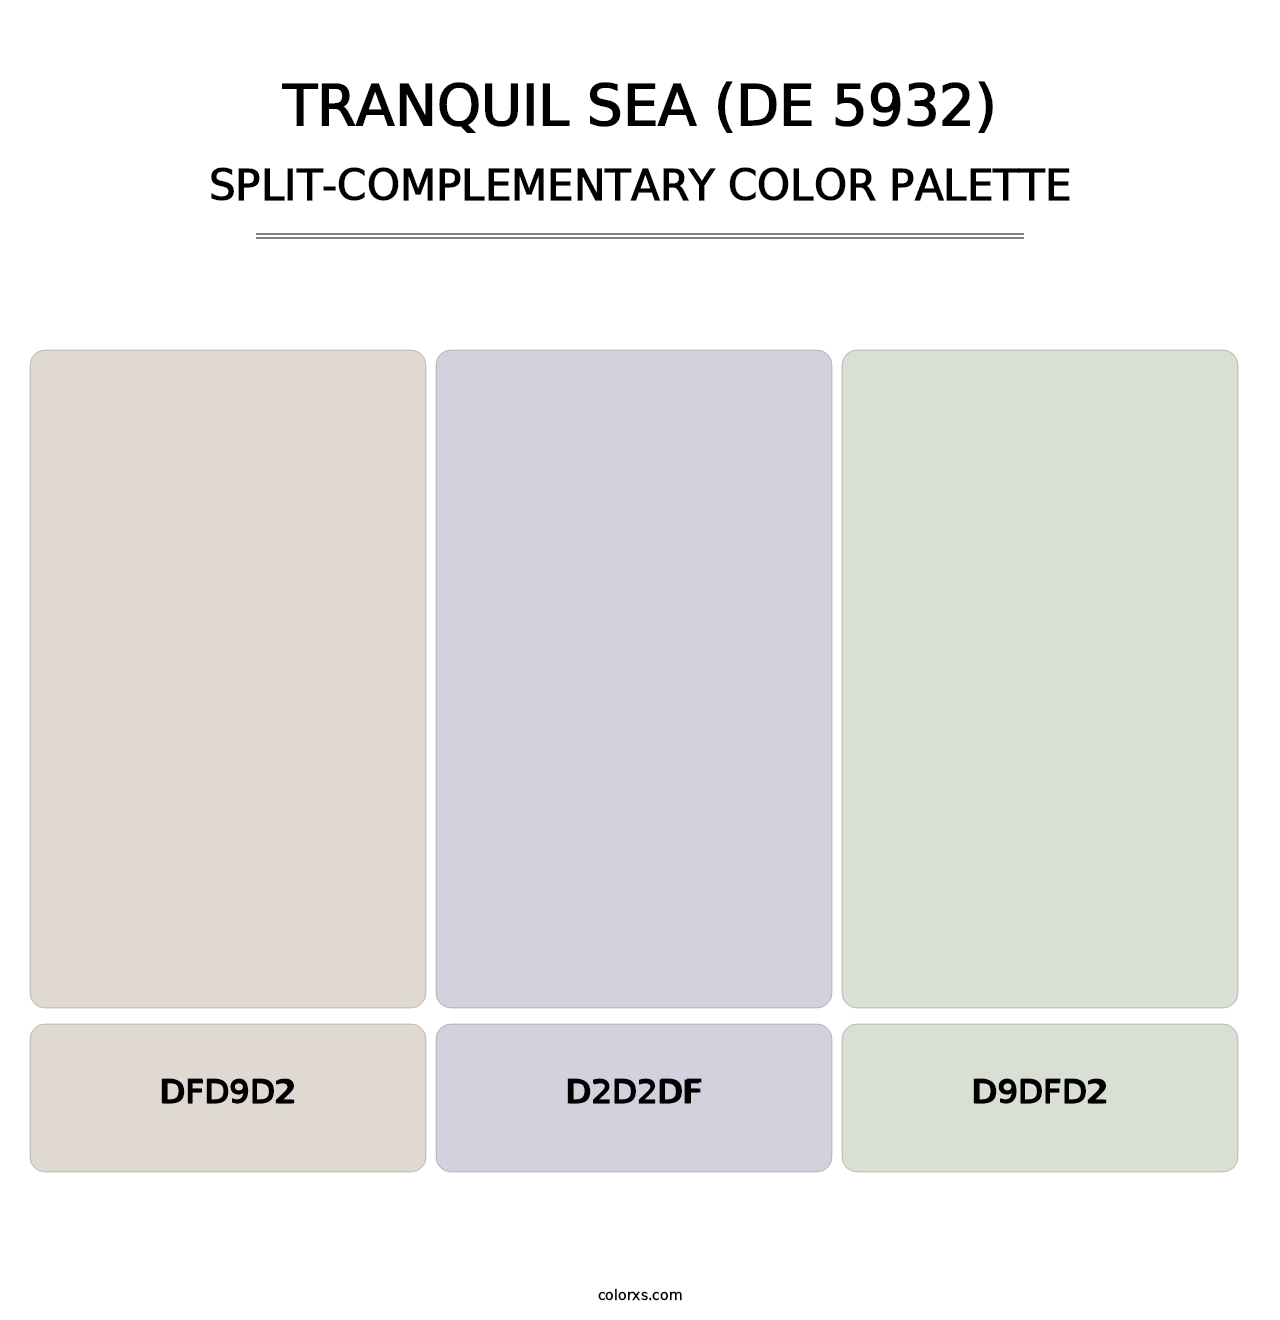 Tranquil Sea (DE 5932) - Split-Complementary Color Palette